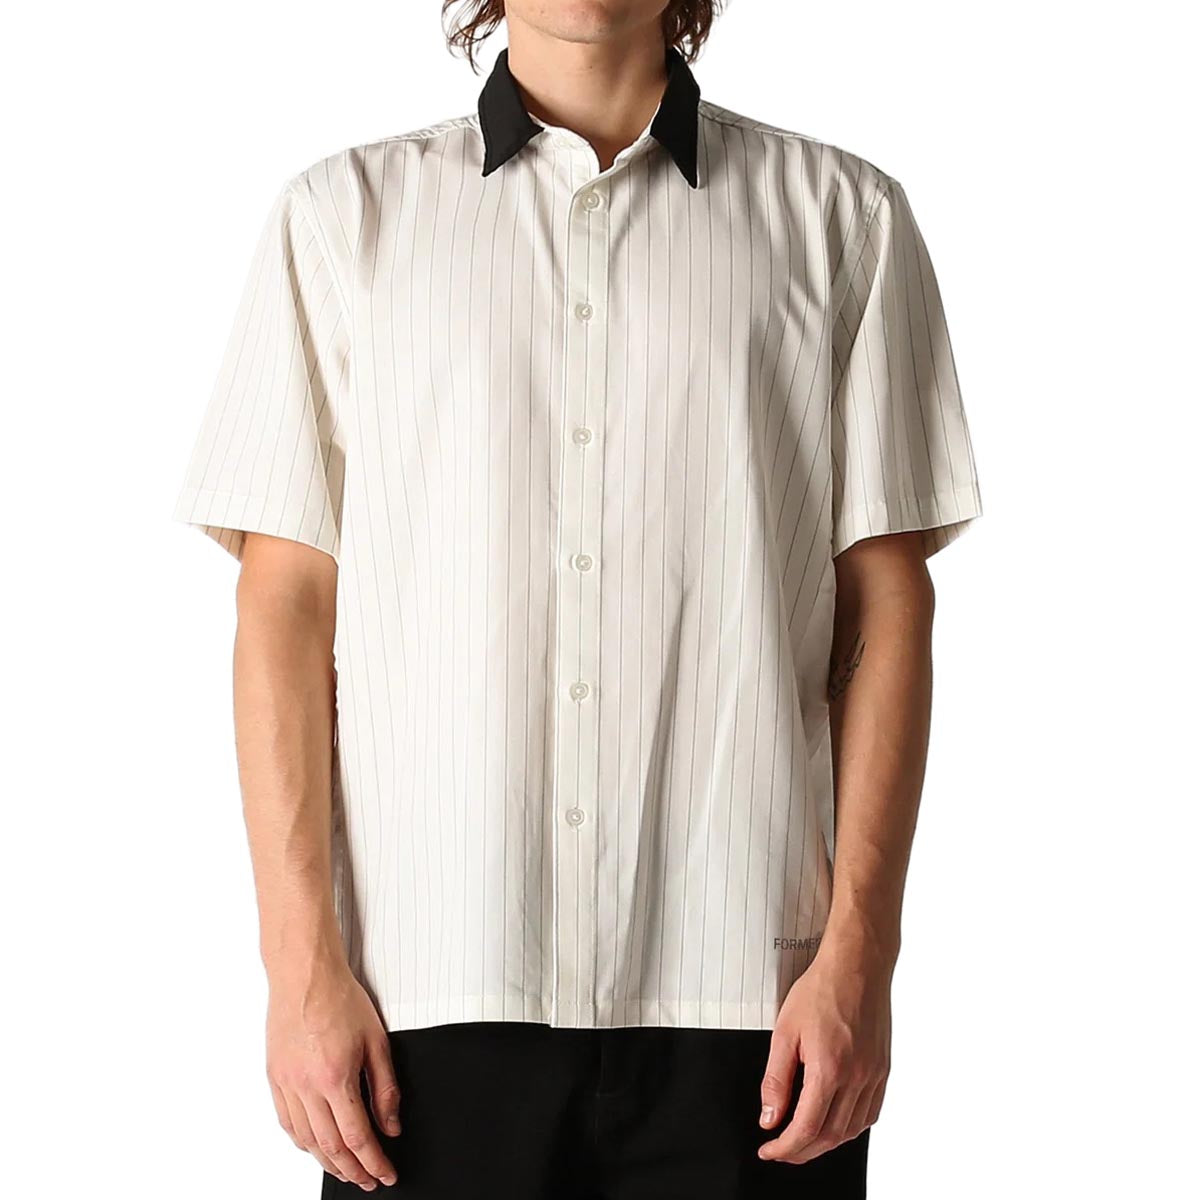 Former Vivian Pinstripe Shirt - White image 1